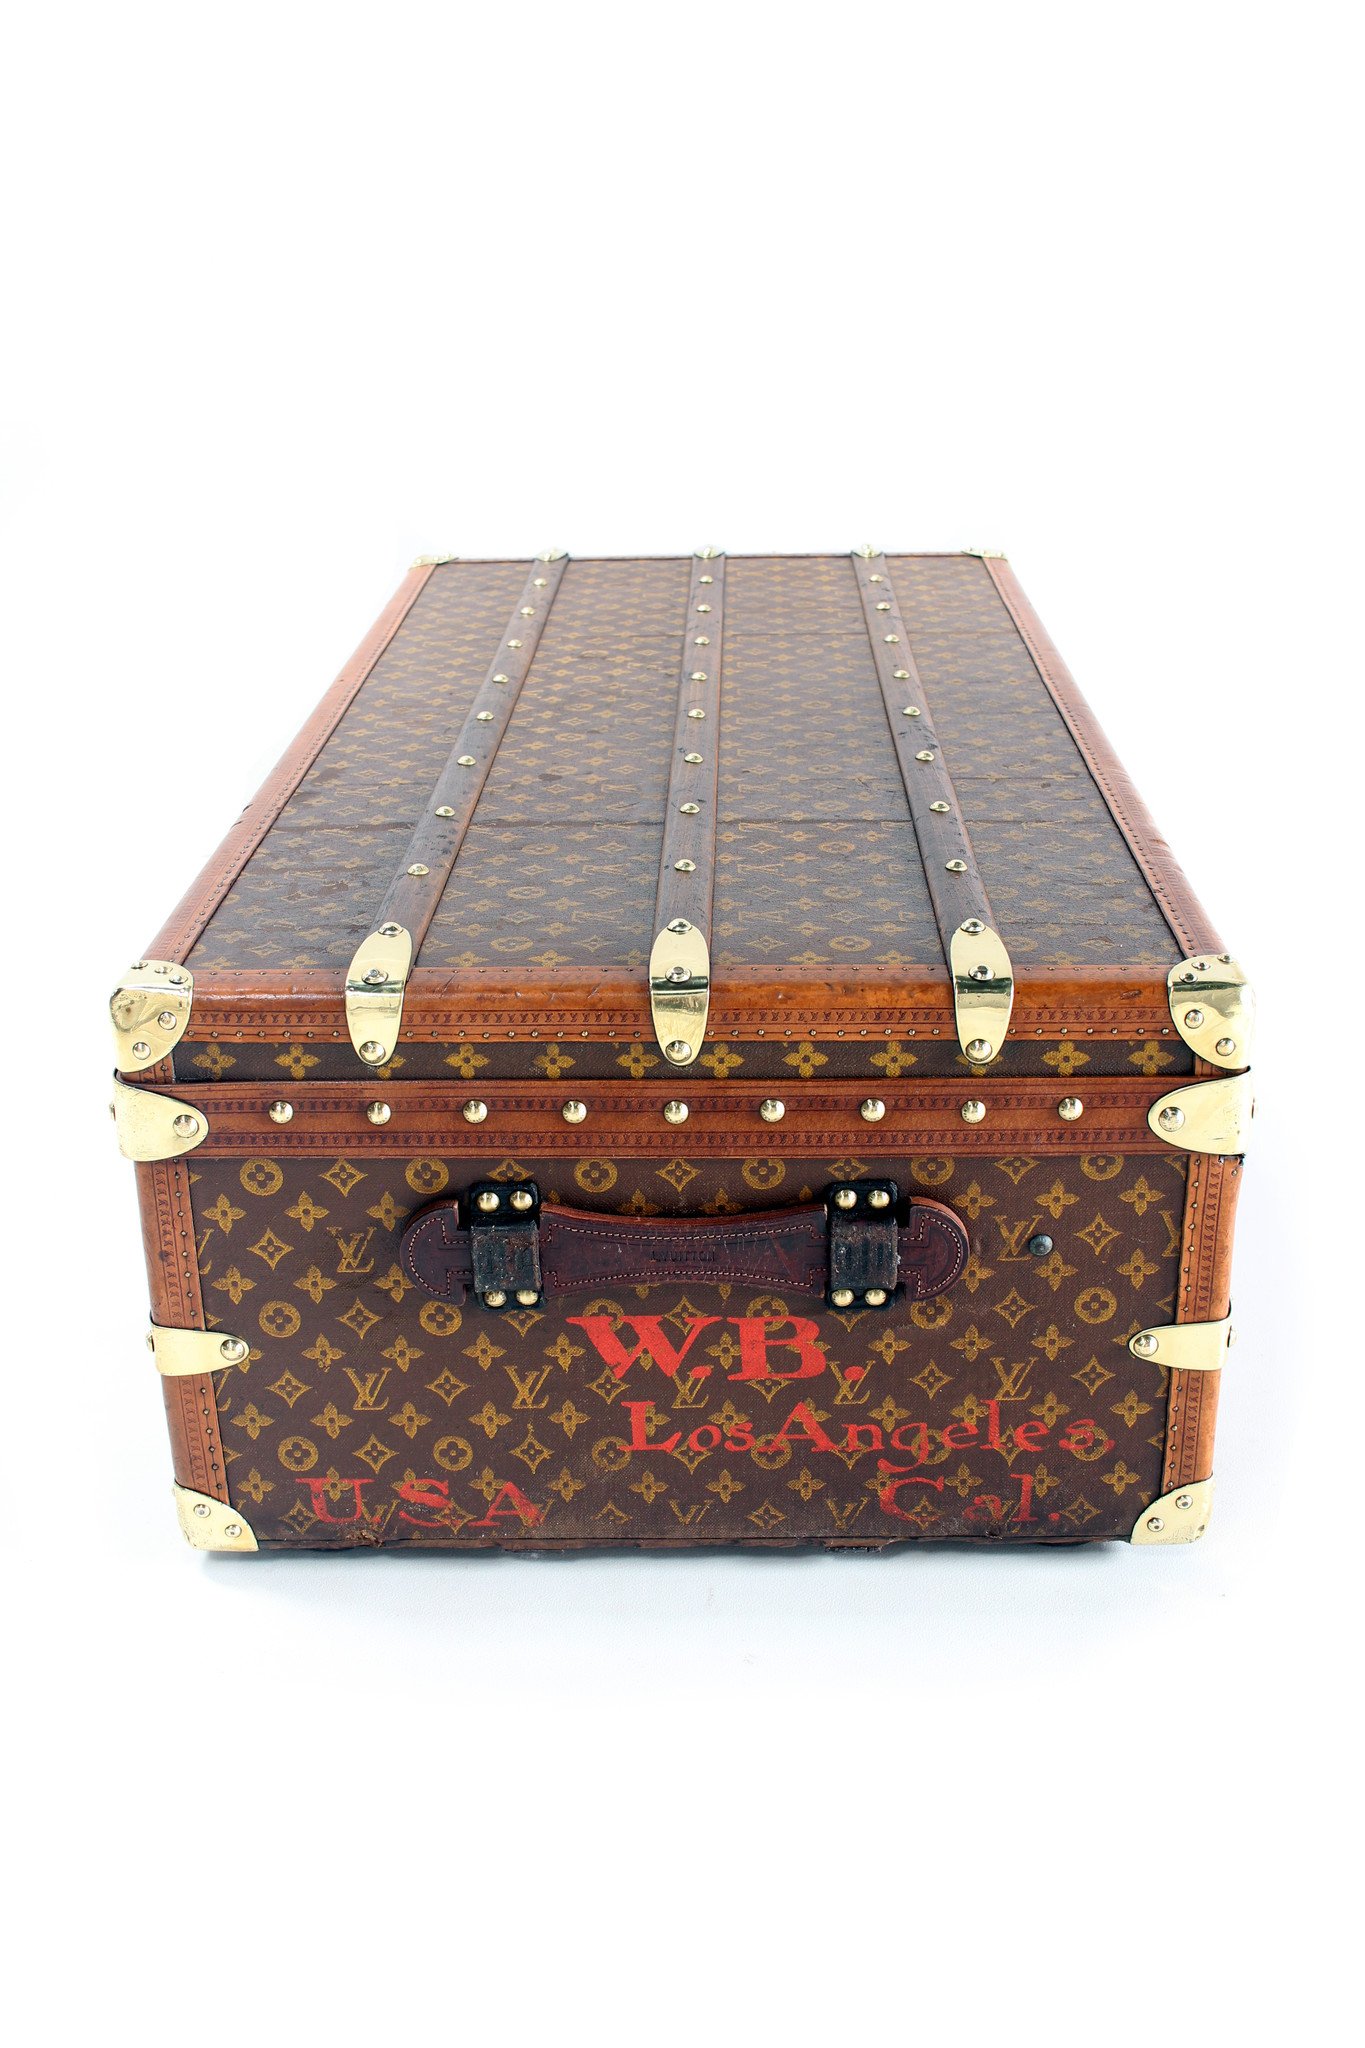 1st Louis Vuitton trunk Trianon - HET HUIS VAN WAUW